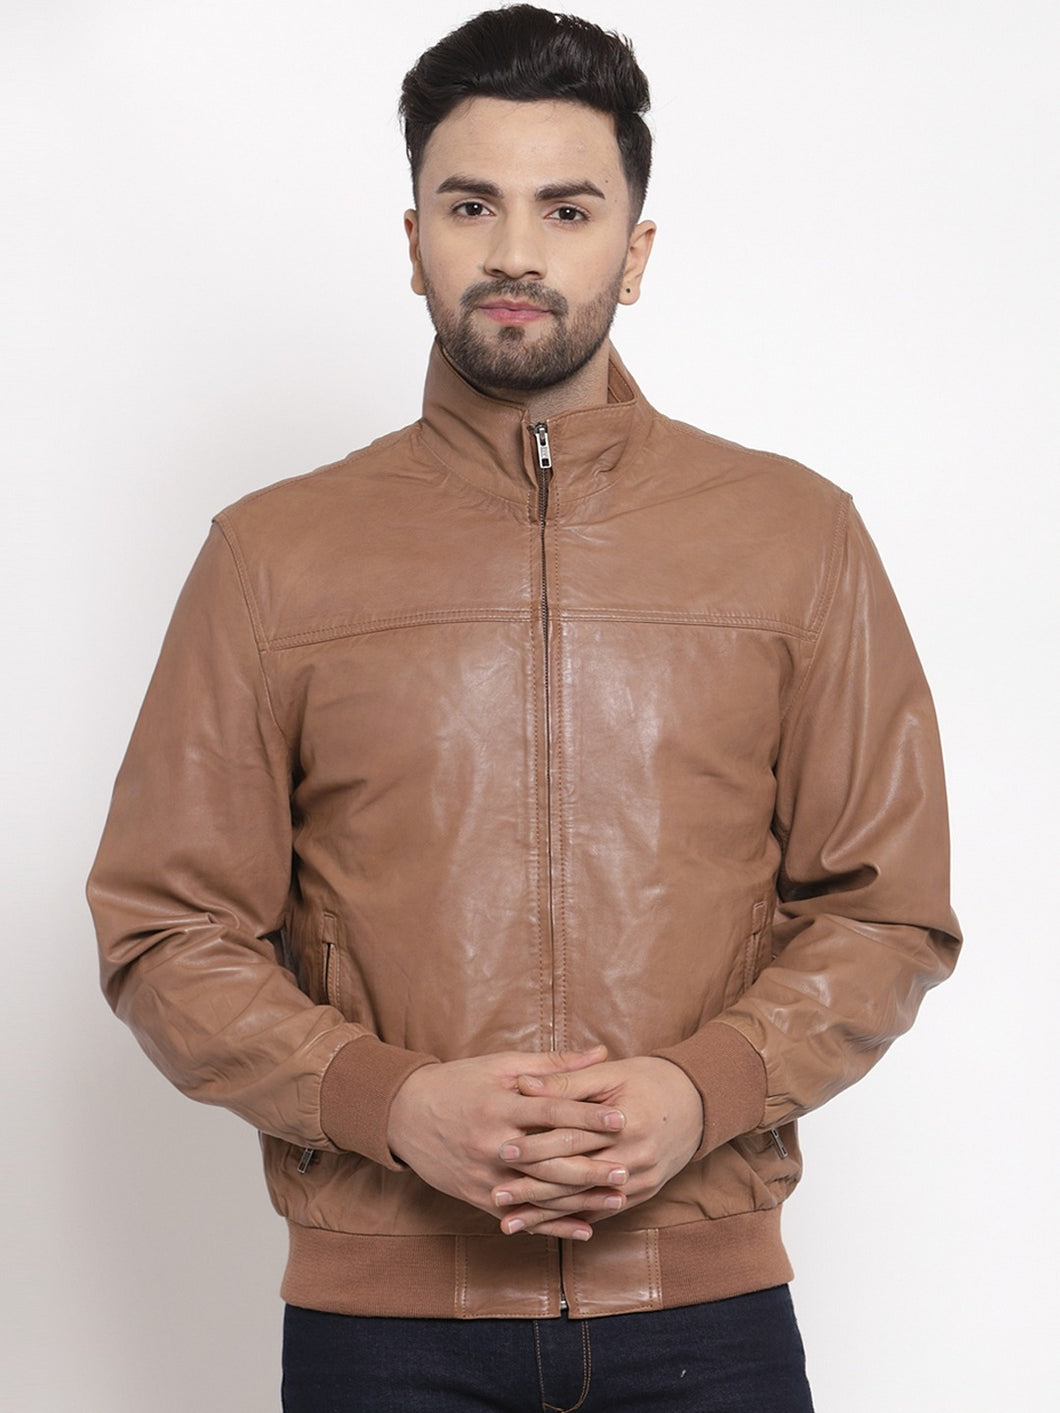 Teakwood Leathers Men's 100% Genuine Leather Jacket